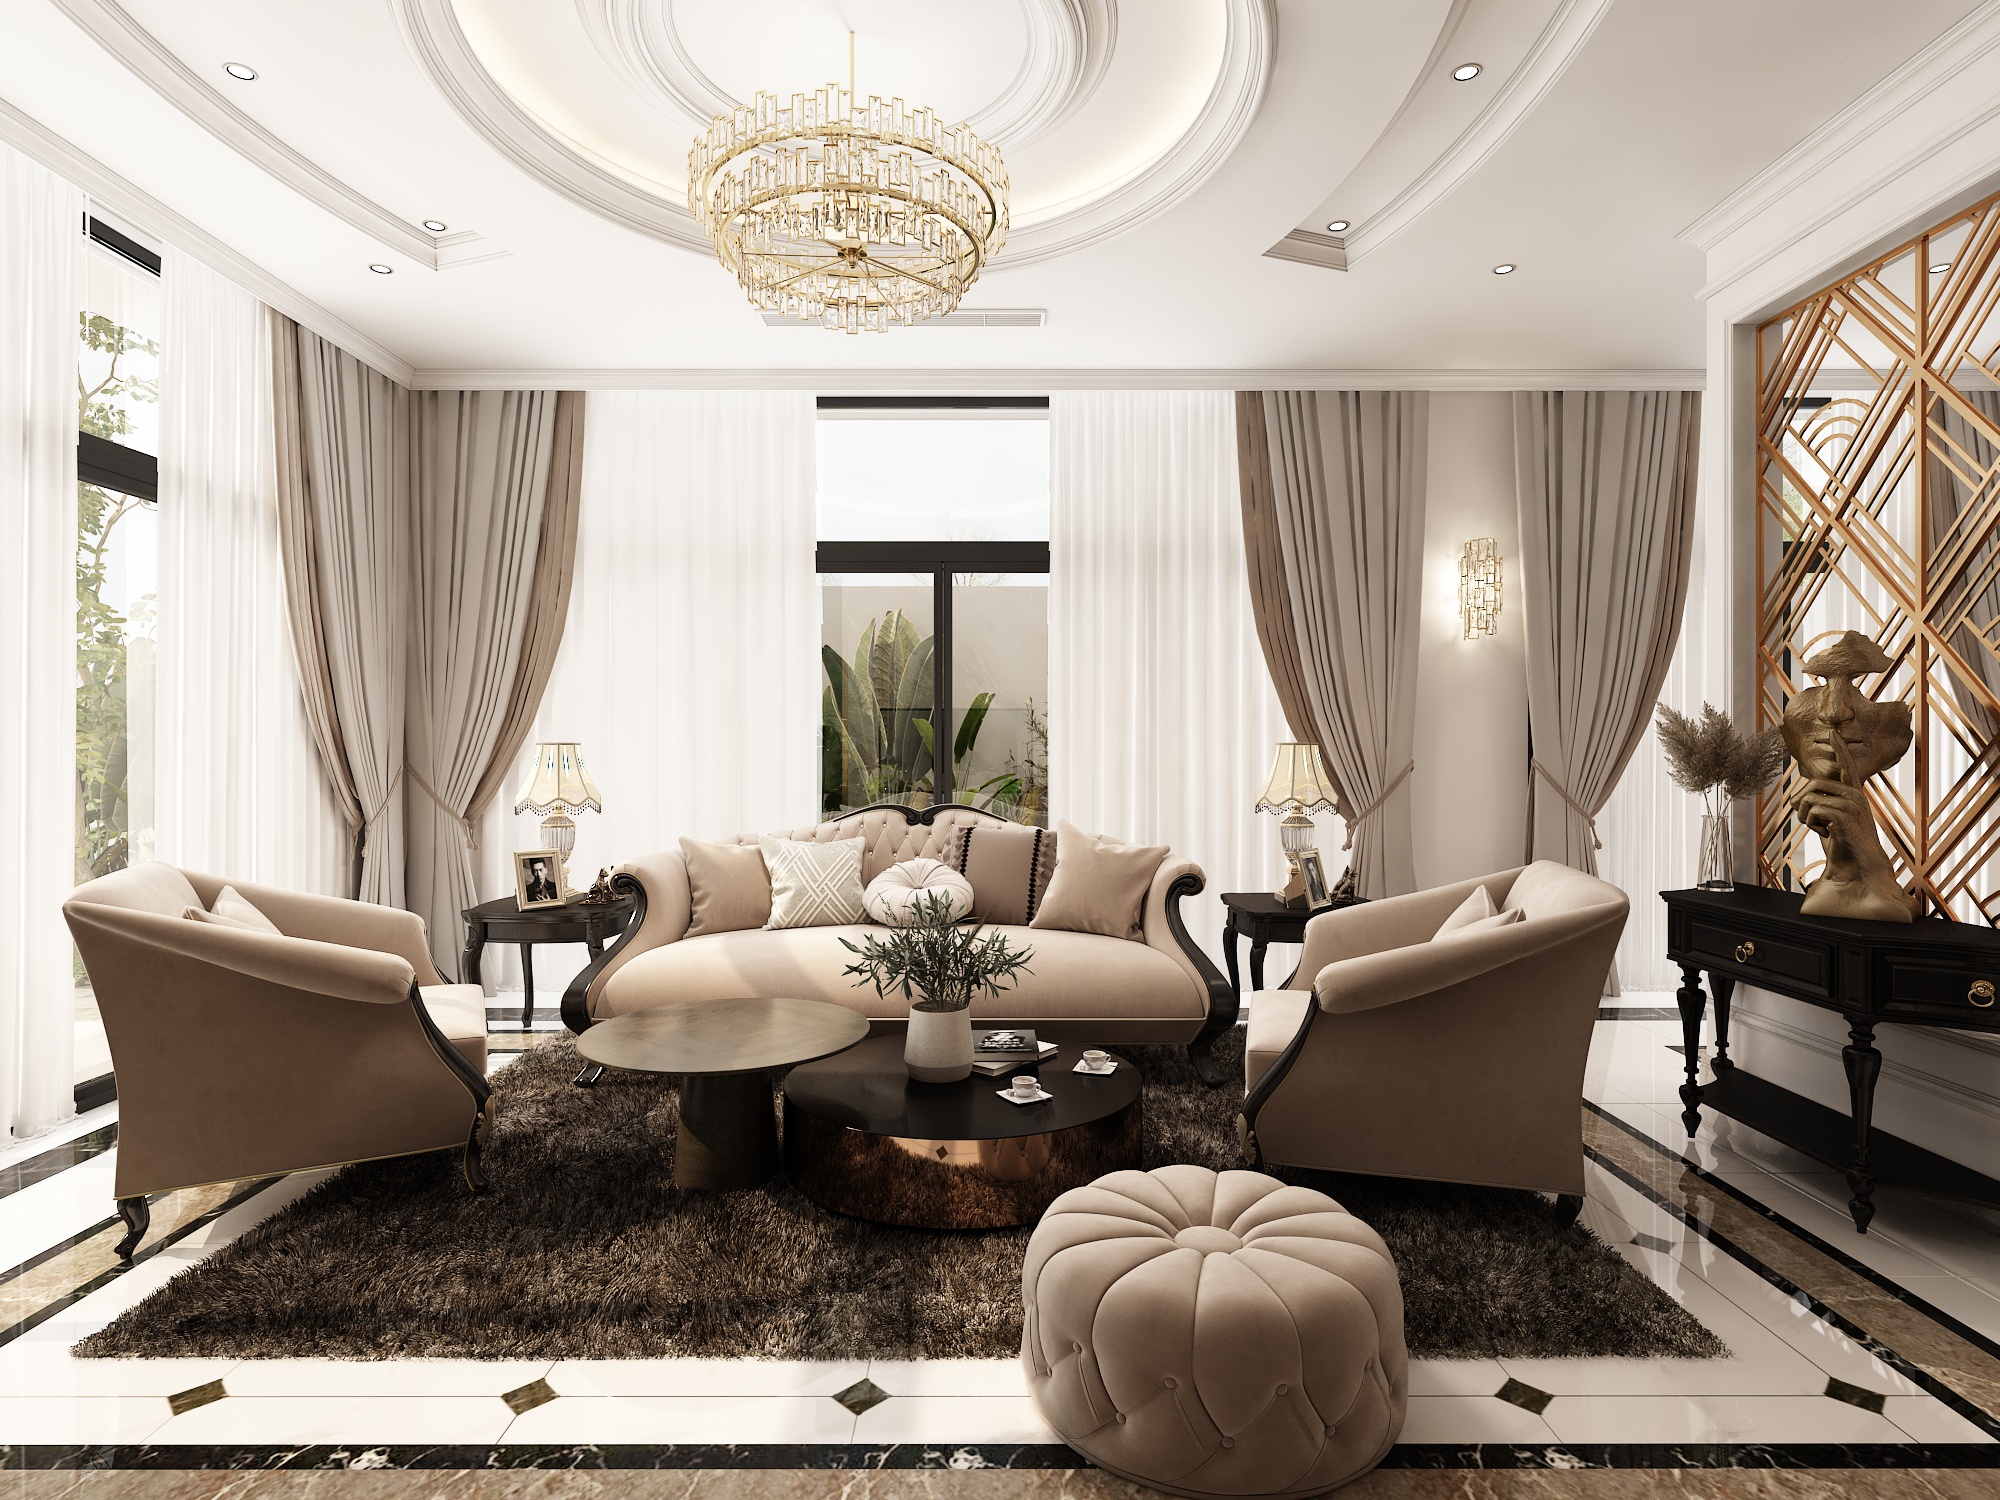 Thiết kế nội thất Biệt Thự tại Hồ Chí Minh BIỆT THỰ QUẬN 9 1593136067 0